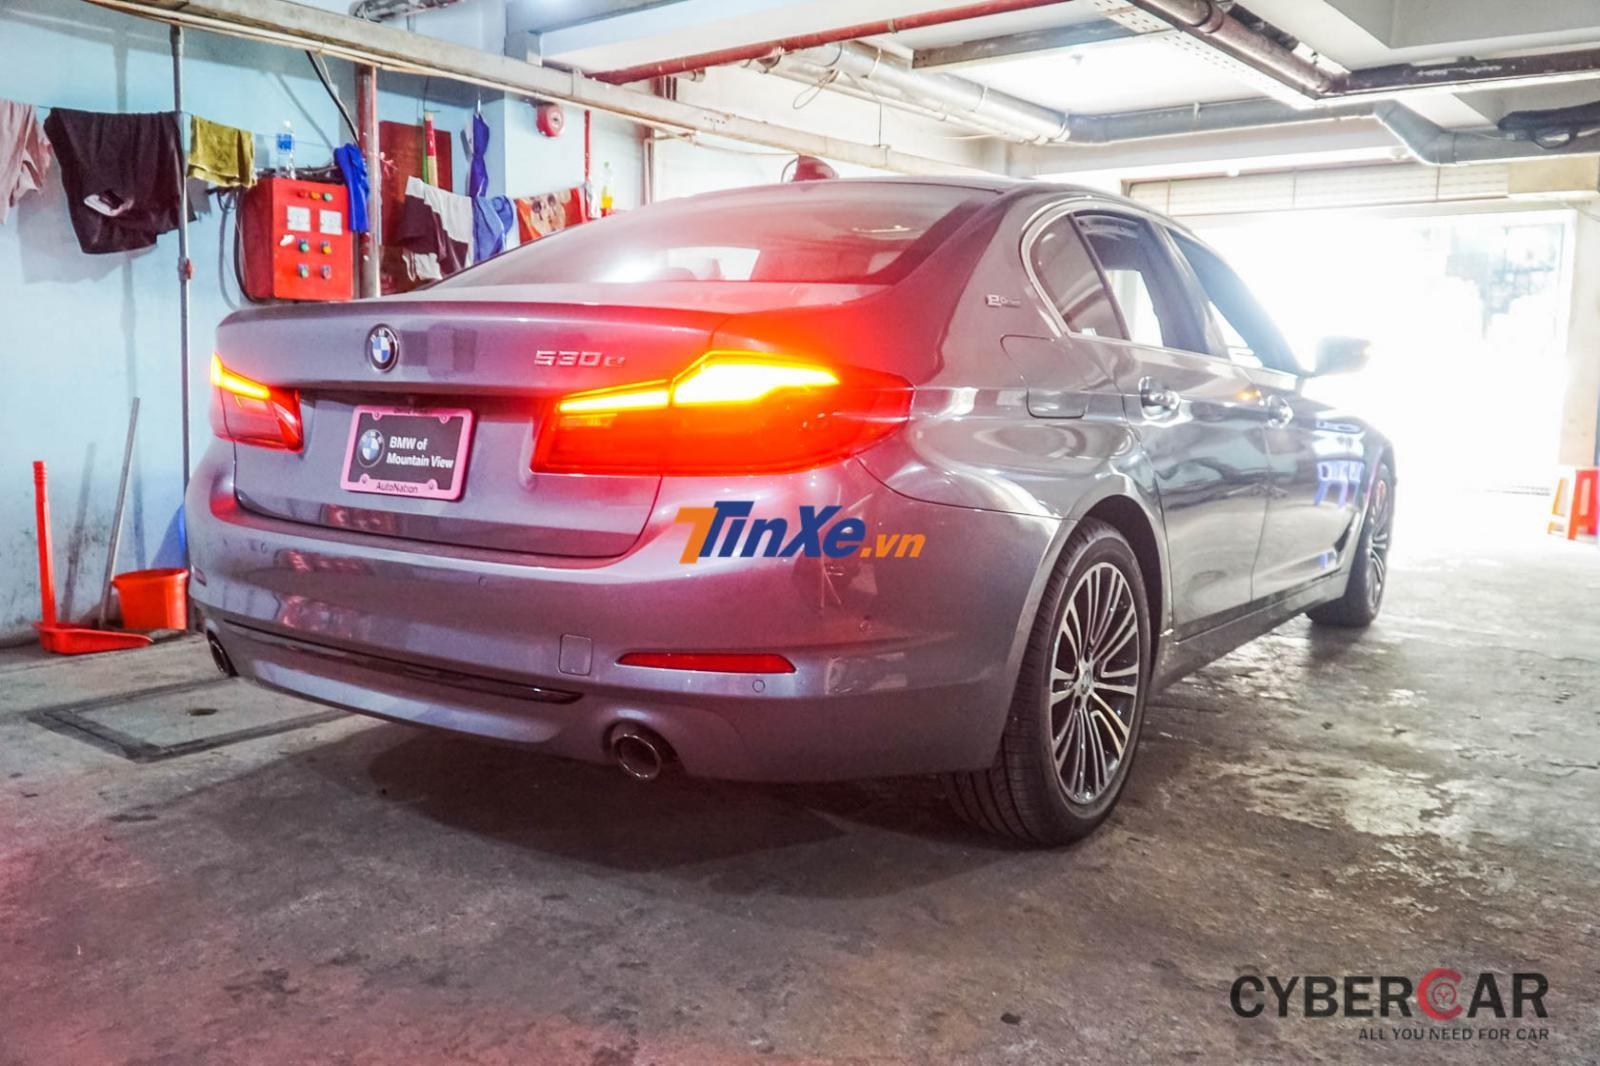 Thiết kế ngoại thất BMW 530e 2019 dần trở nên sang trọng